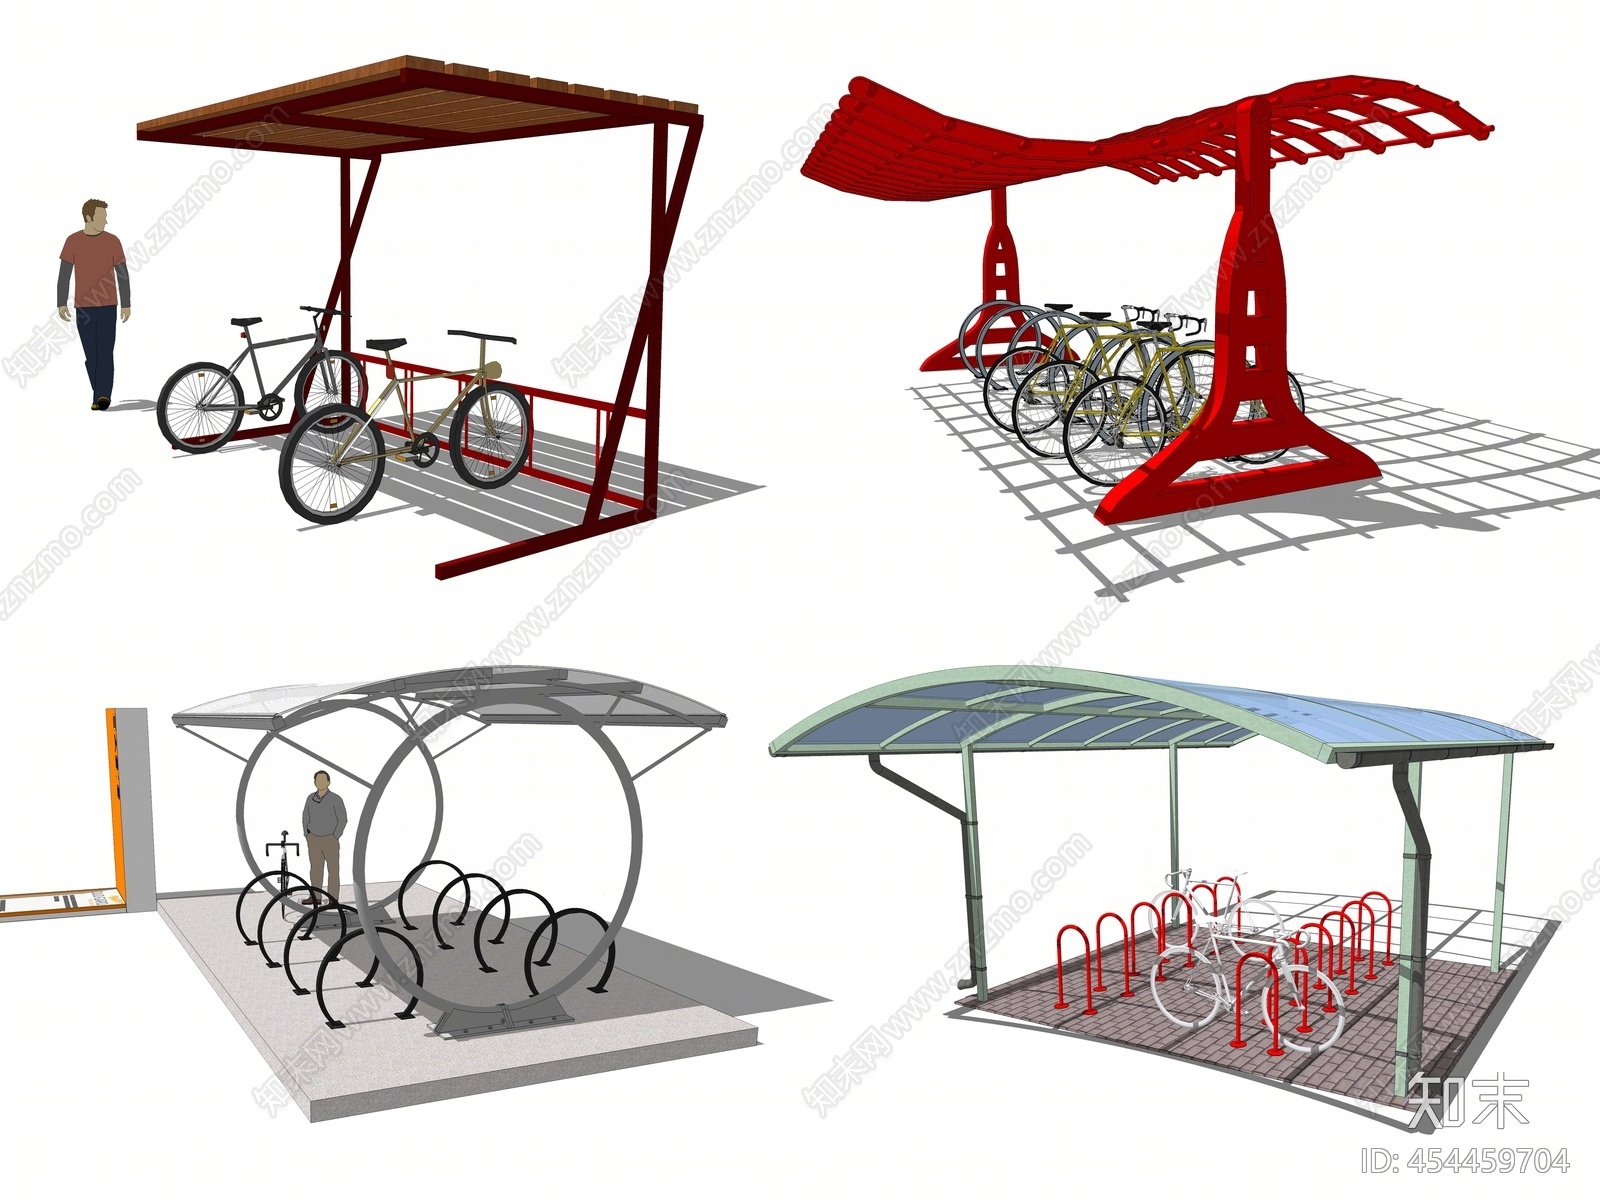 现代创意自行车棚 自行车停车架 自行车停靠架 自行车站台 公园广场